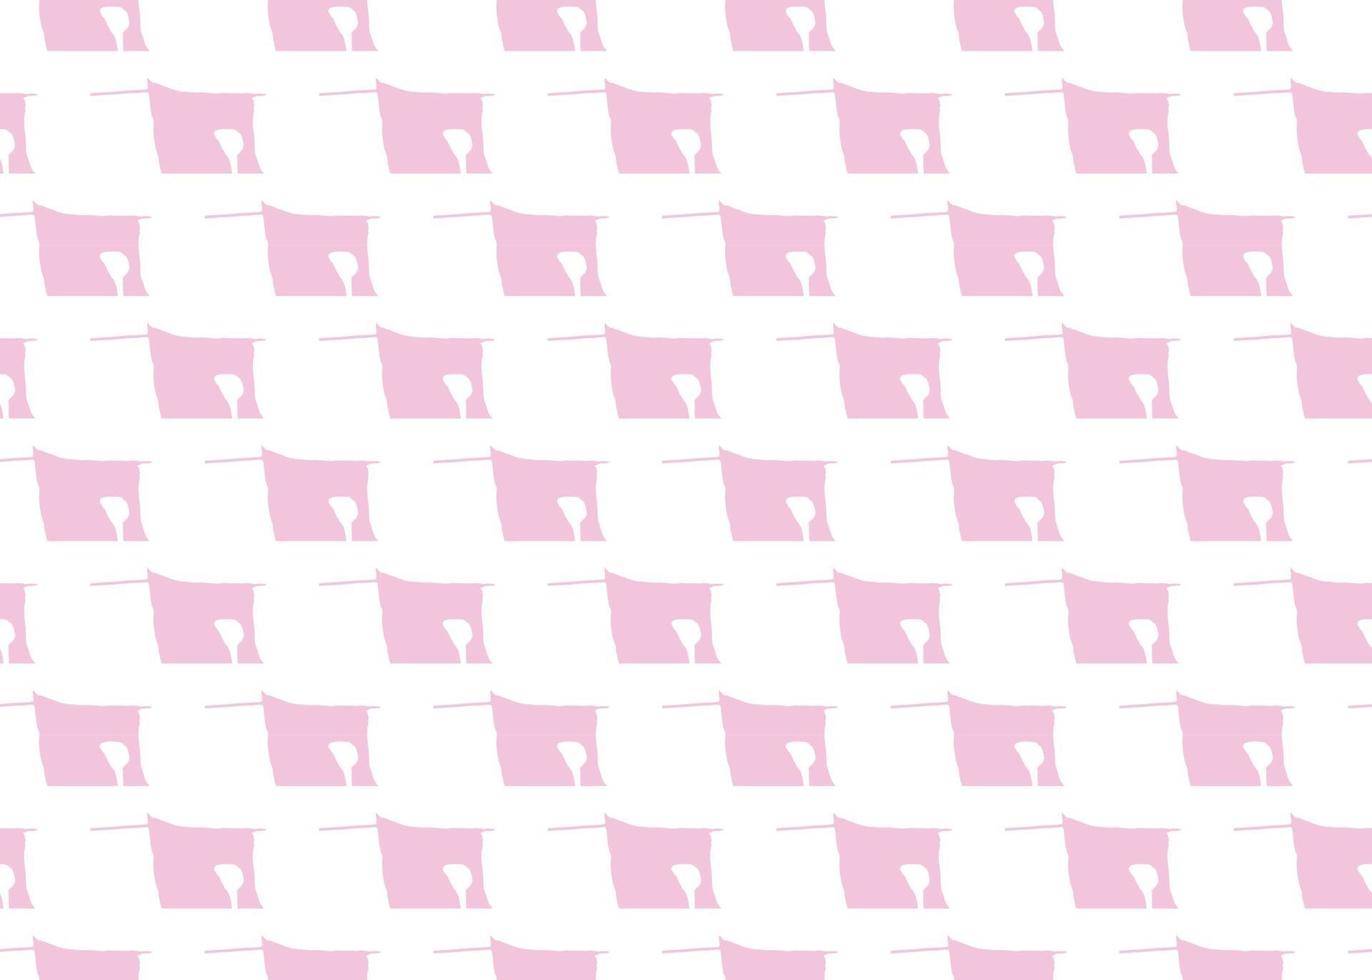 Vektor Textur Hintergrund, nahtloses Muster. handgezeichnete, rosa, weiße Farben.